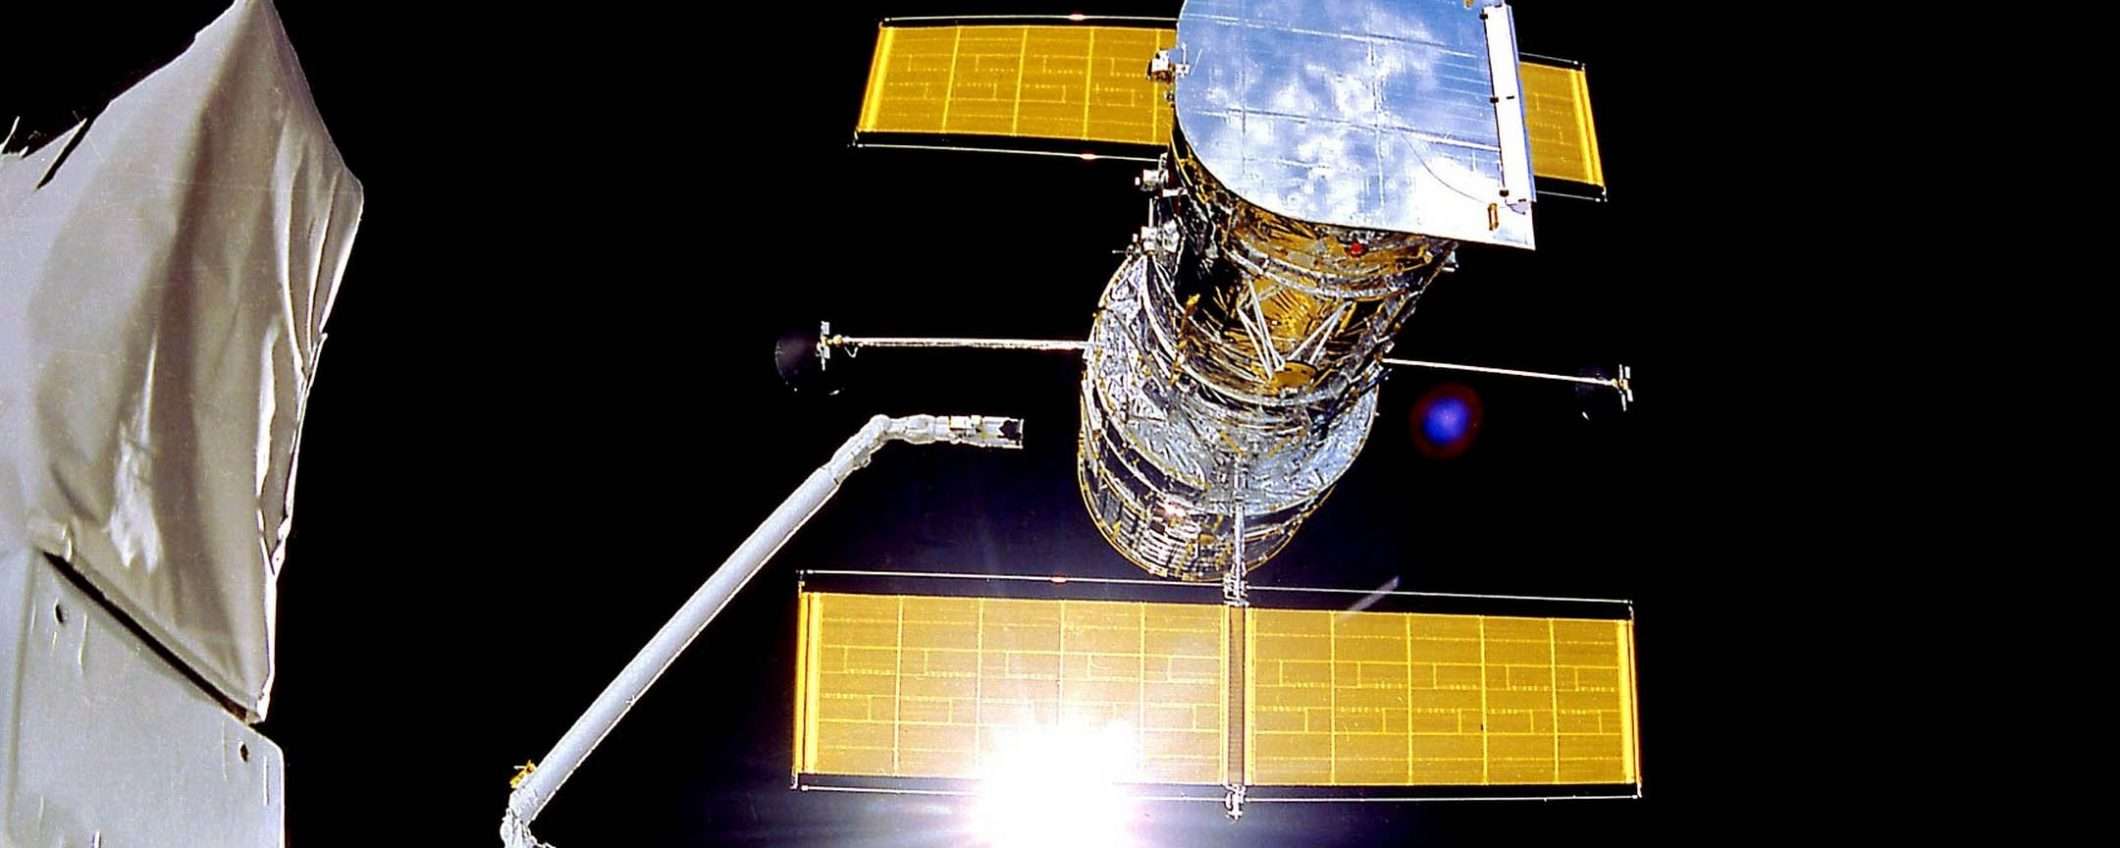 Telescopio Hubble: test della procedura di backup (update)